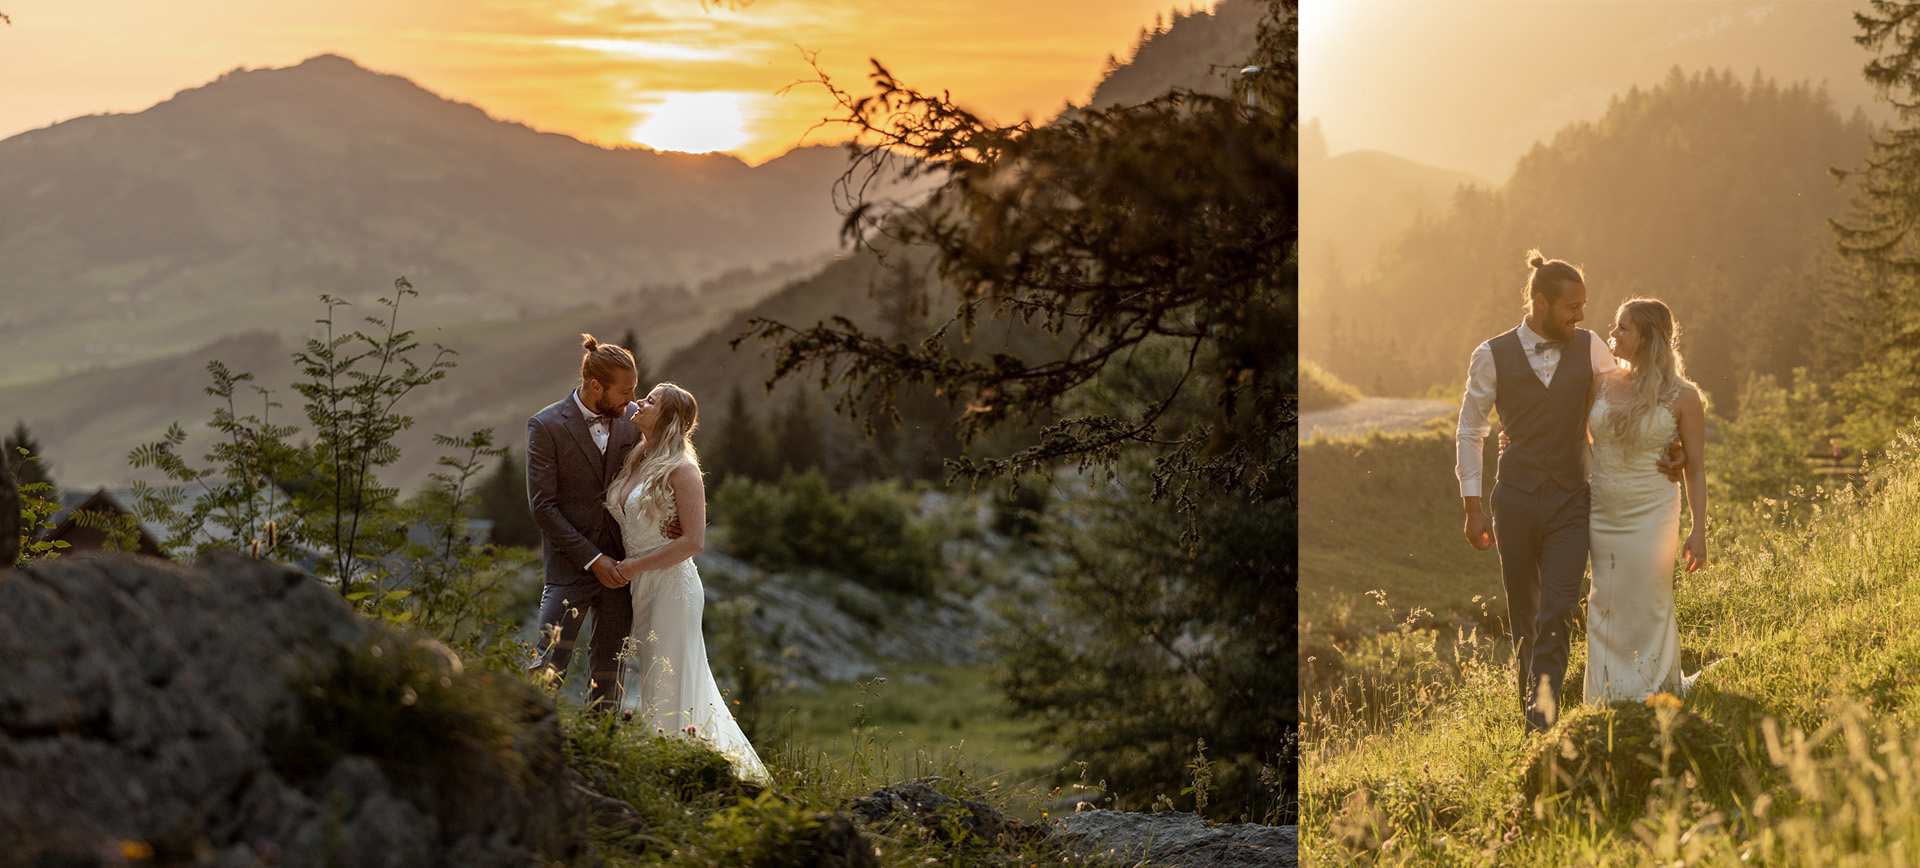 switzerland elopement wedding in the mountains - adventure wedding